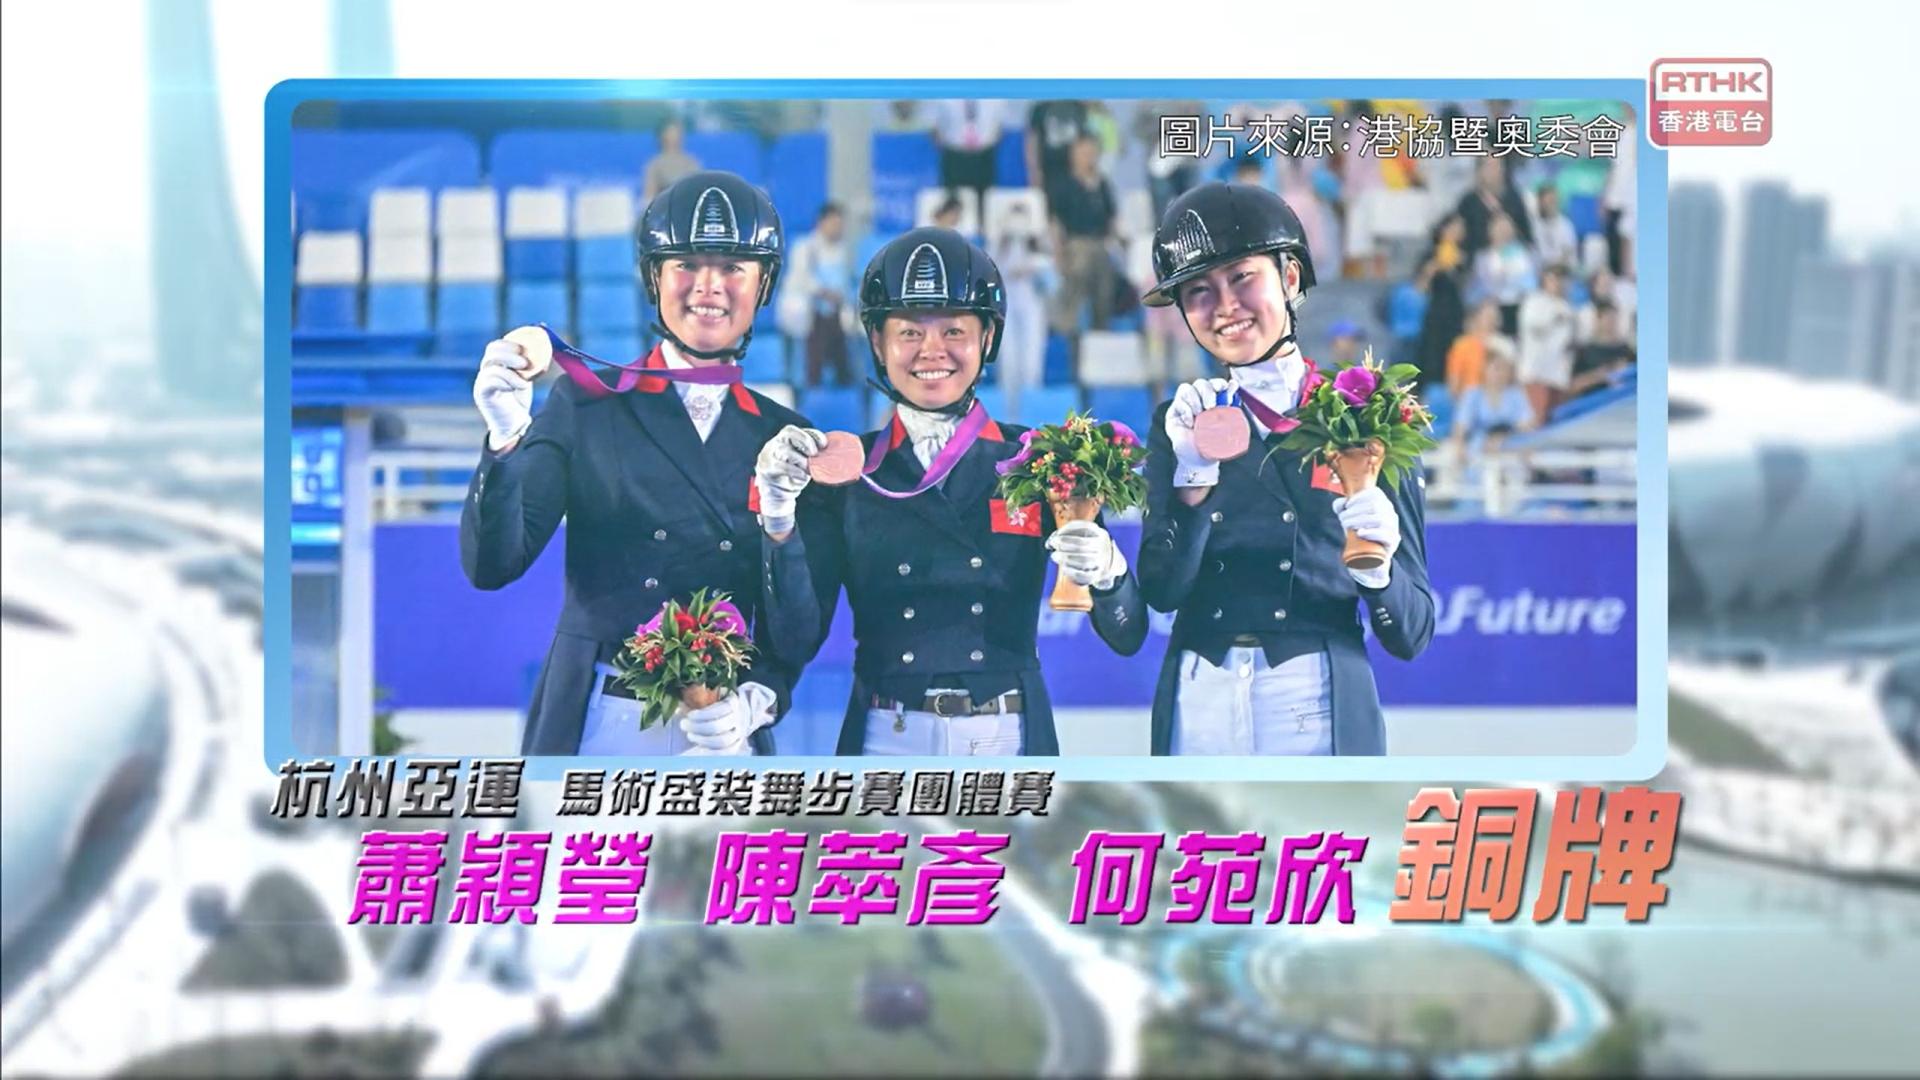 恭喜香港马术代表 萧颖莹、陈萃彦、何苑欣 于杭州亚运首夺马术盛装舞步赛团体铜牌